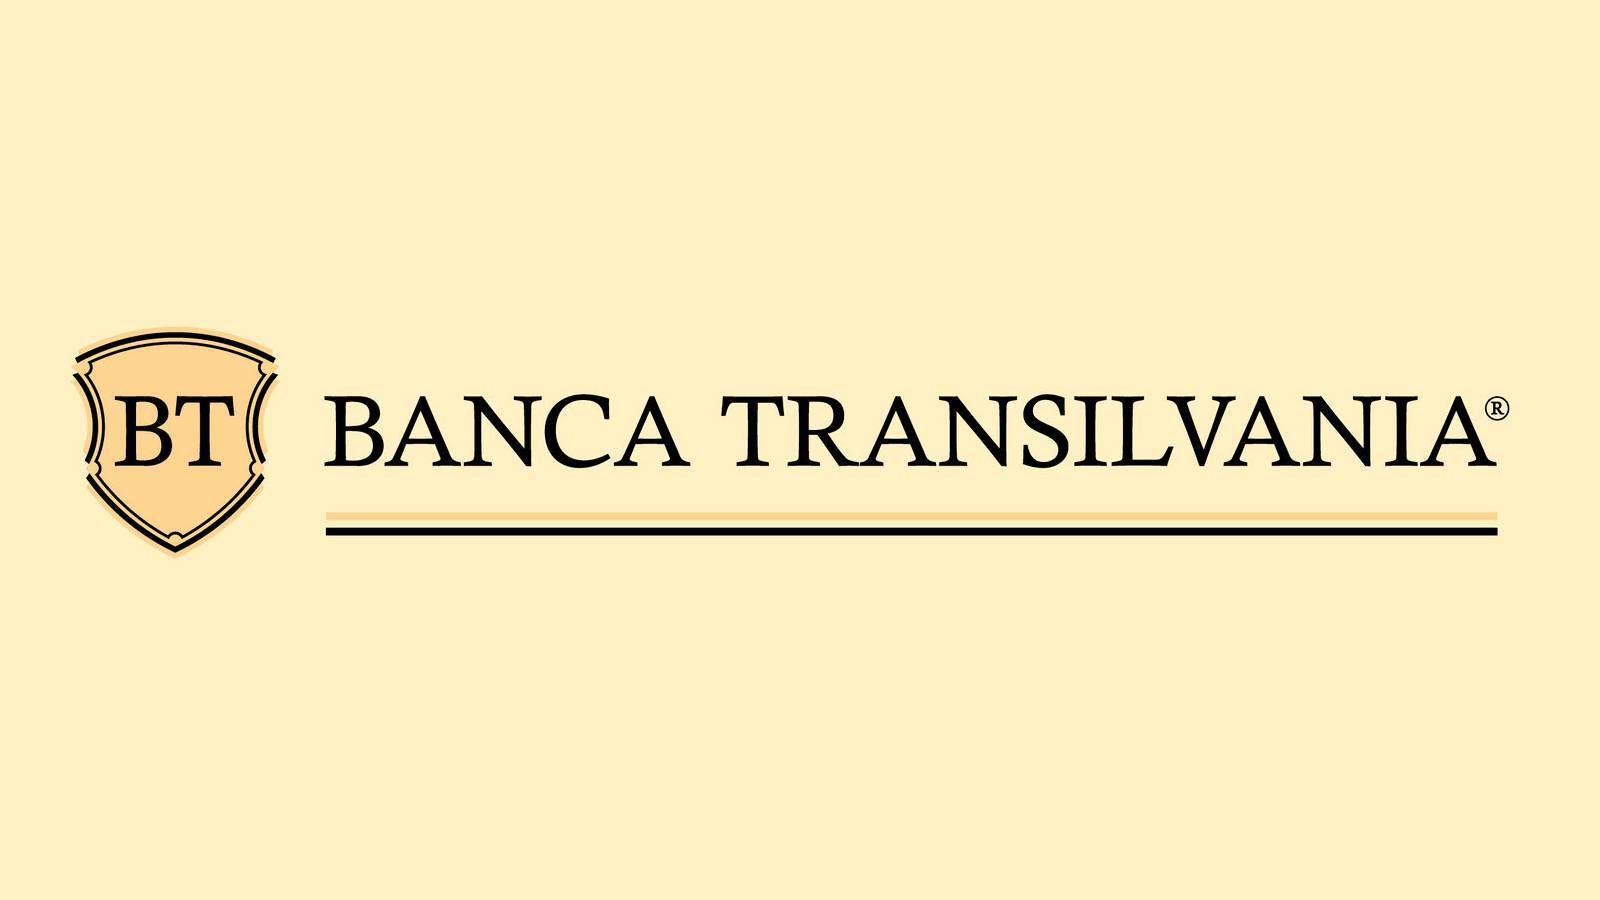 Banca Transilvania division